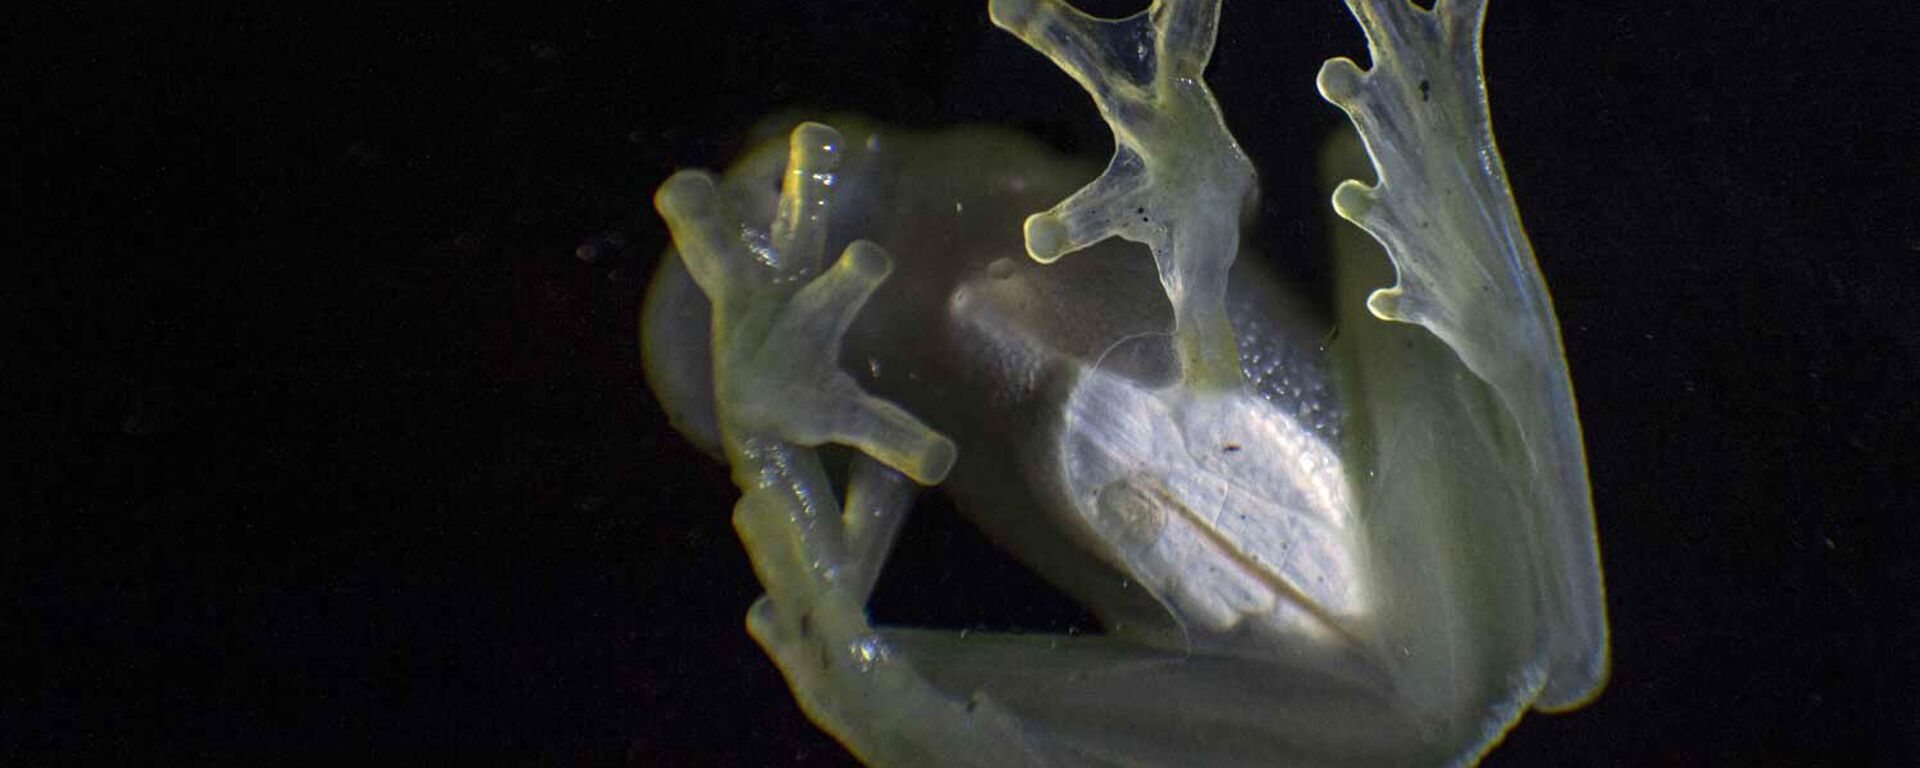 Стаклена жаба белог срца приказана је у природном резервату планине Кордиљера Ескалера у Тарапотоу, североисточни Перу. - Sputnik Србија, 1920, 24.12.2022